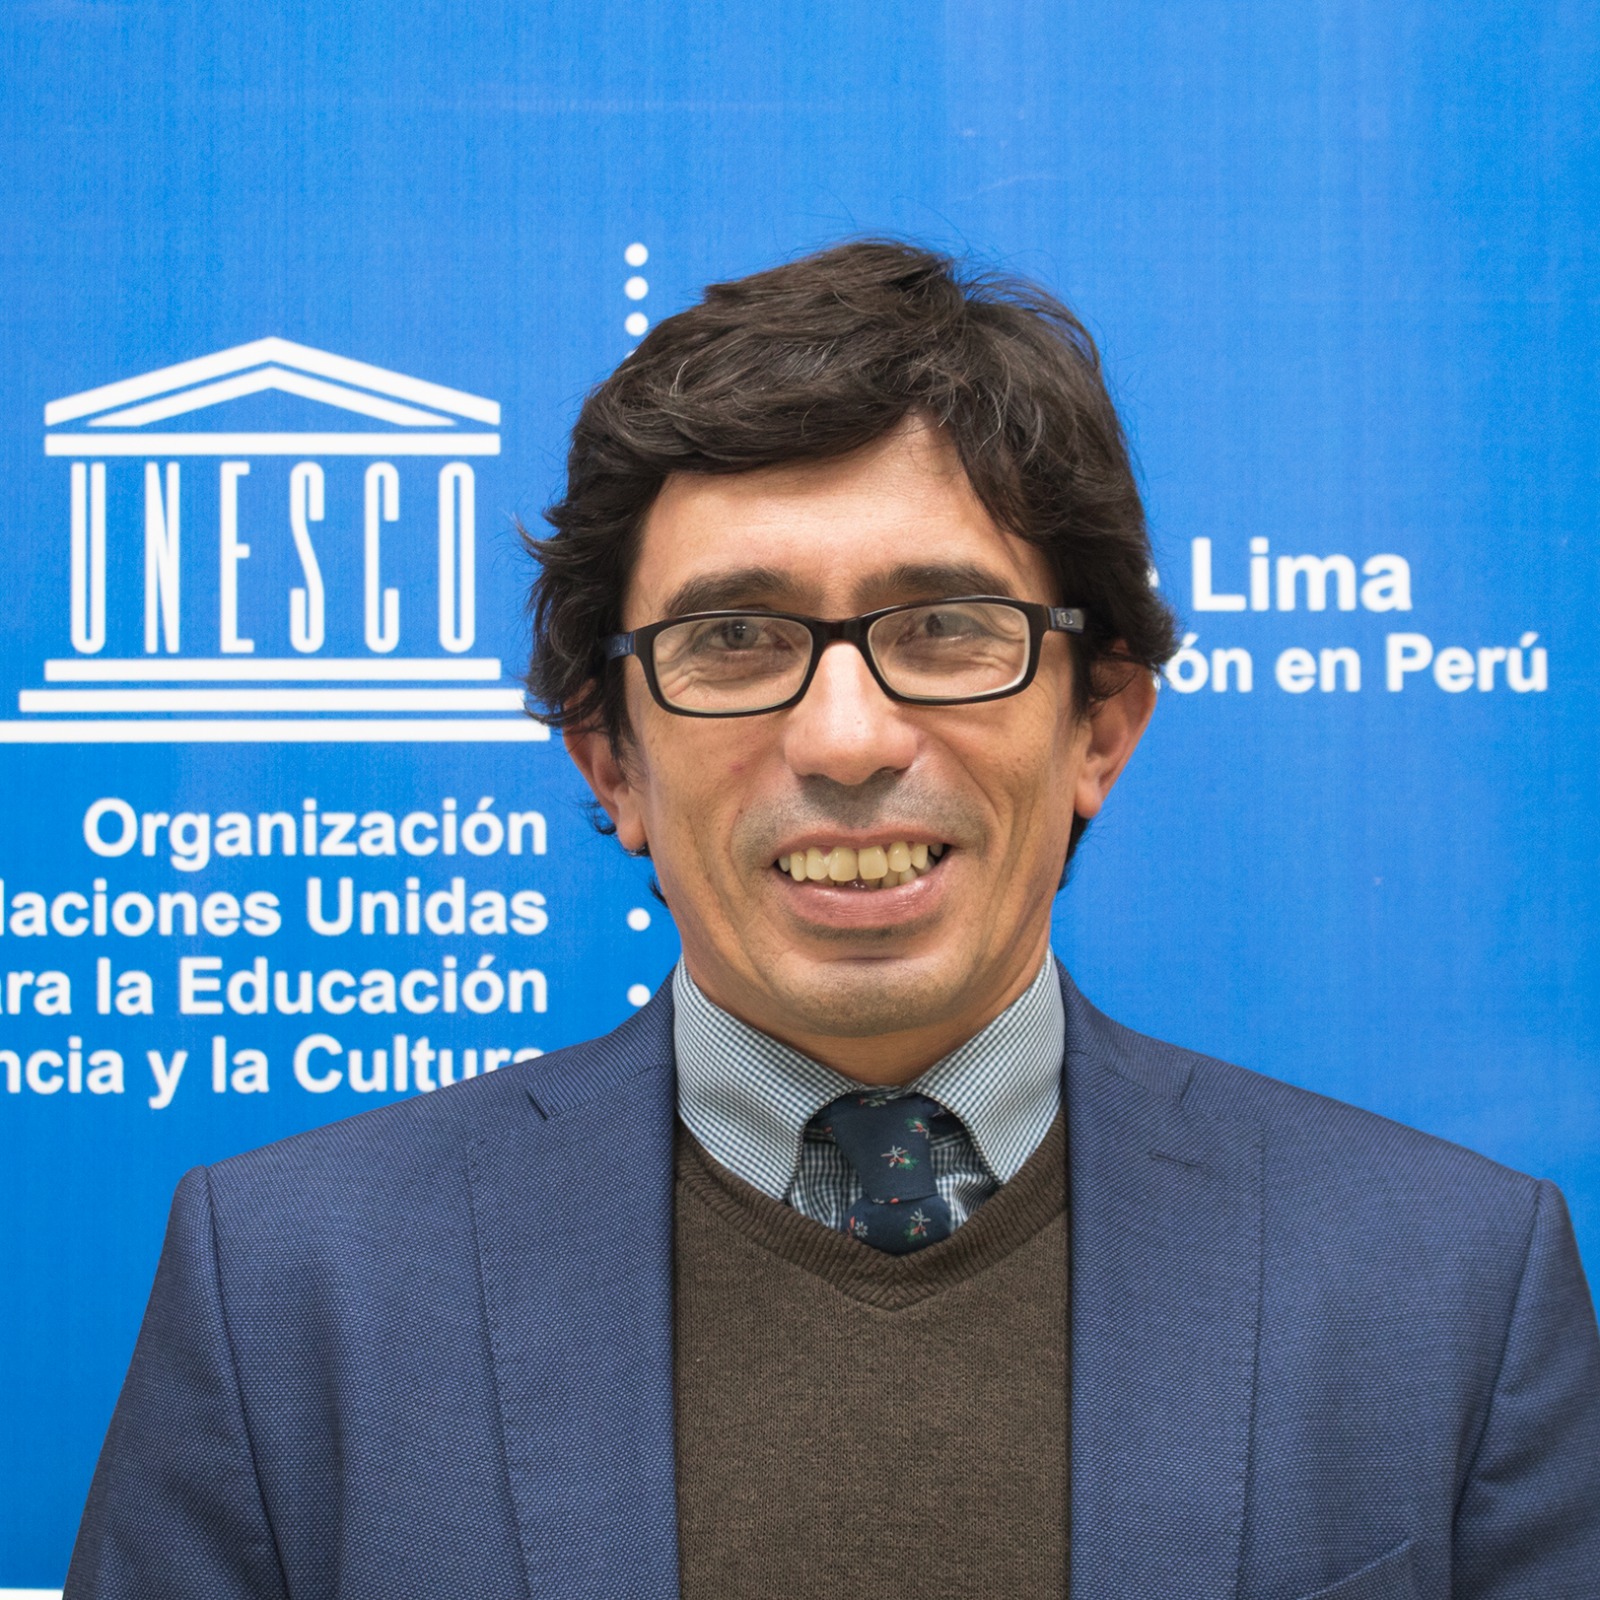 Luis Enrique Lopez-Hurtado